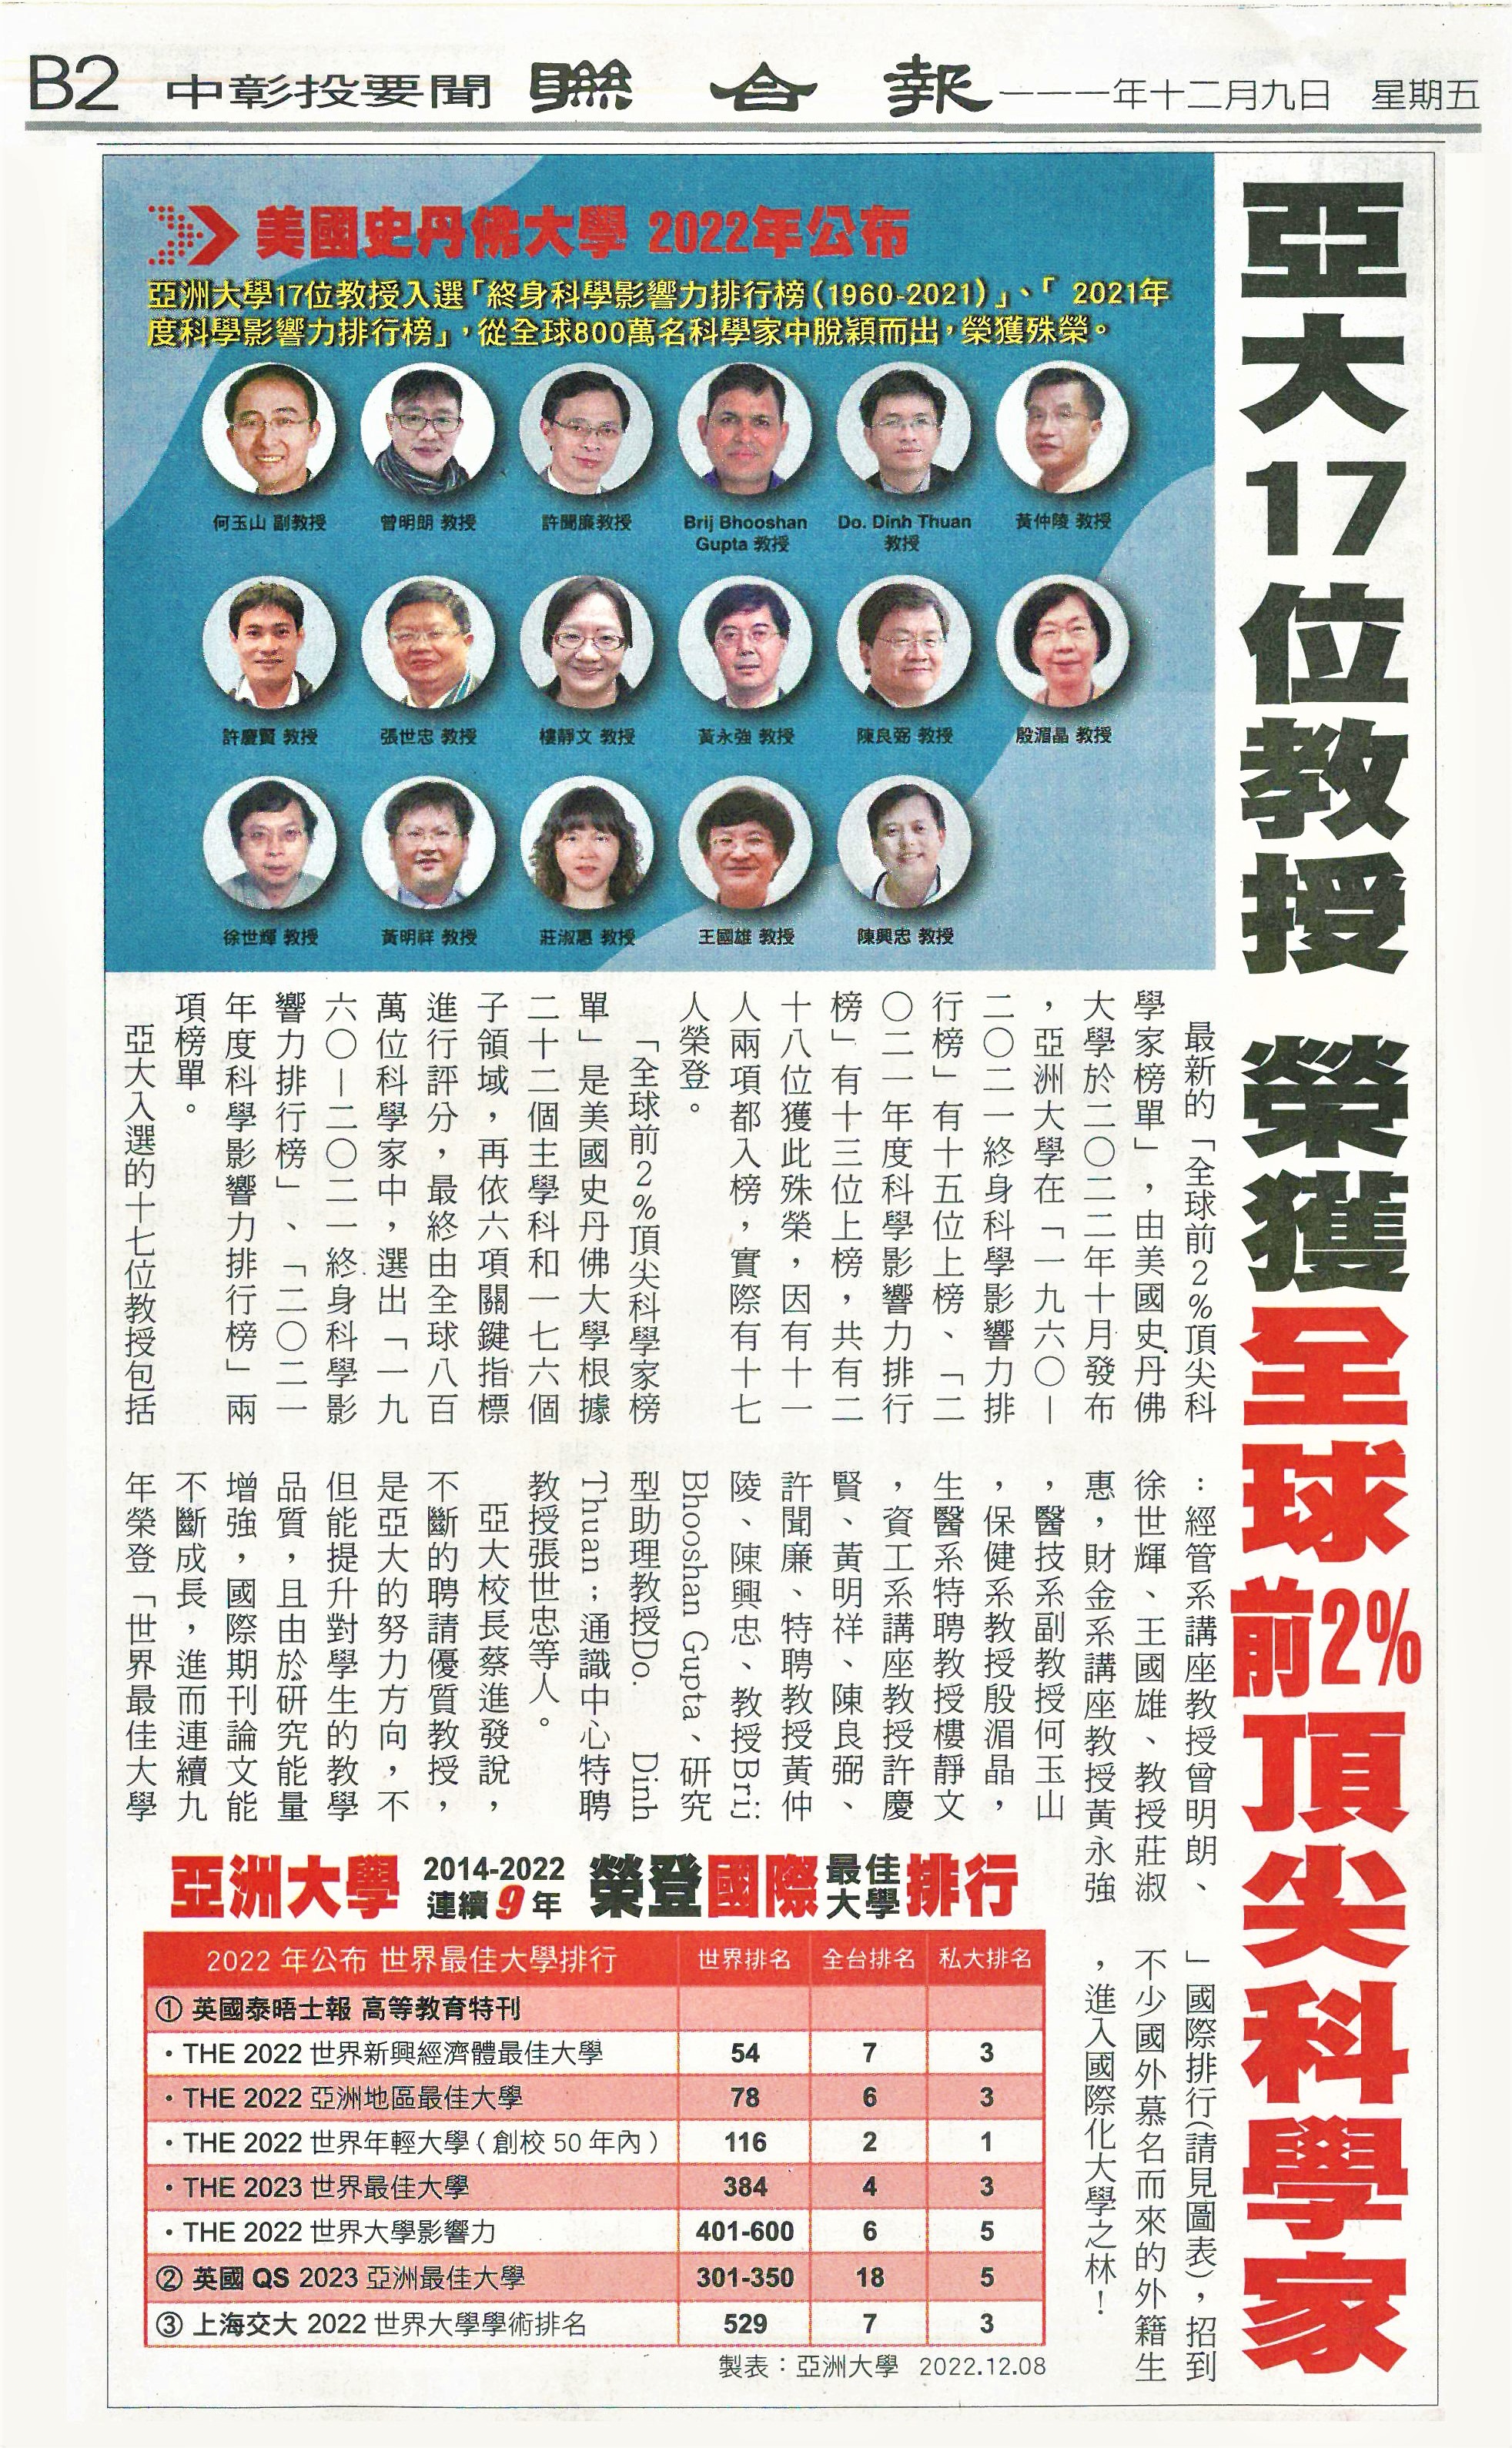 2022-12-09│聯合報│亞洲大學17位教授榮獲「全球前2%頂尖科學家」